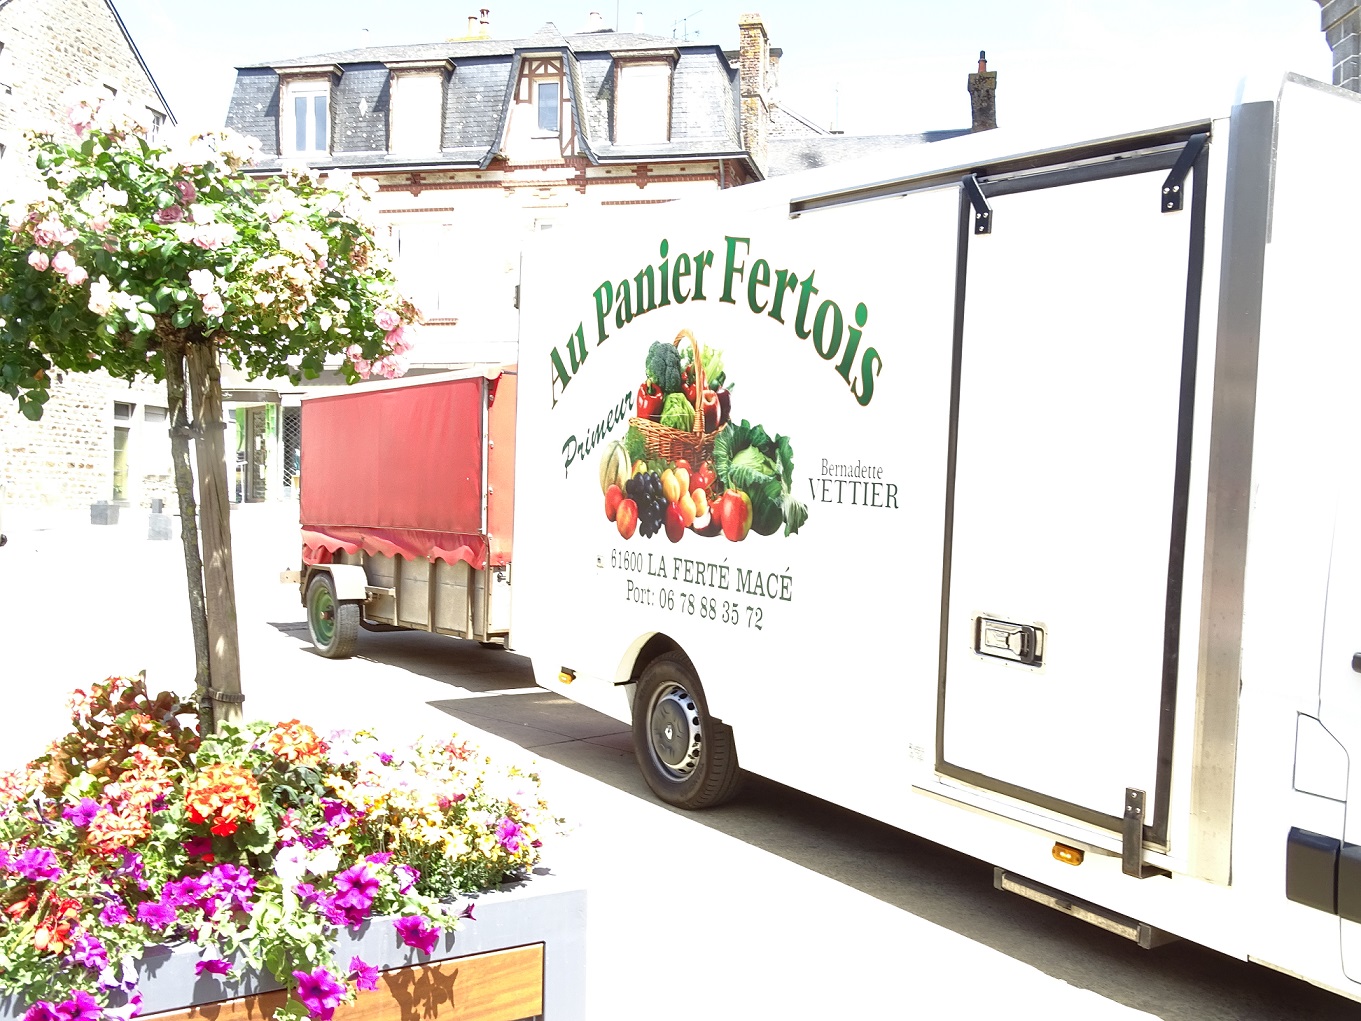 A vendre matériel pour marché ambulant ( camion, remorque, frigo...)
Vente de fruits et légumes sur les marchés , 5 marchés semaine Orne et Mayenne. Plus de détails par tel